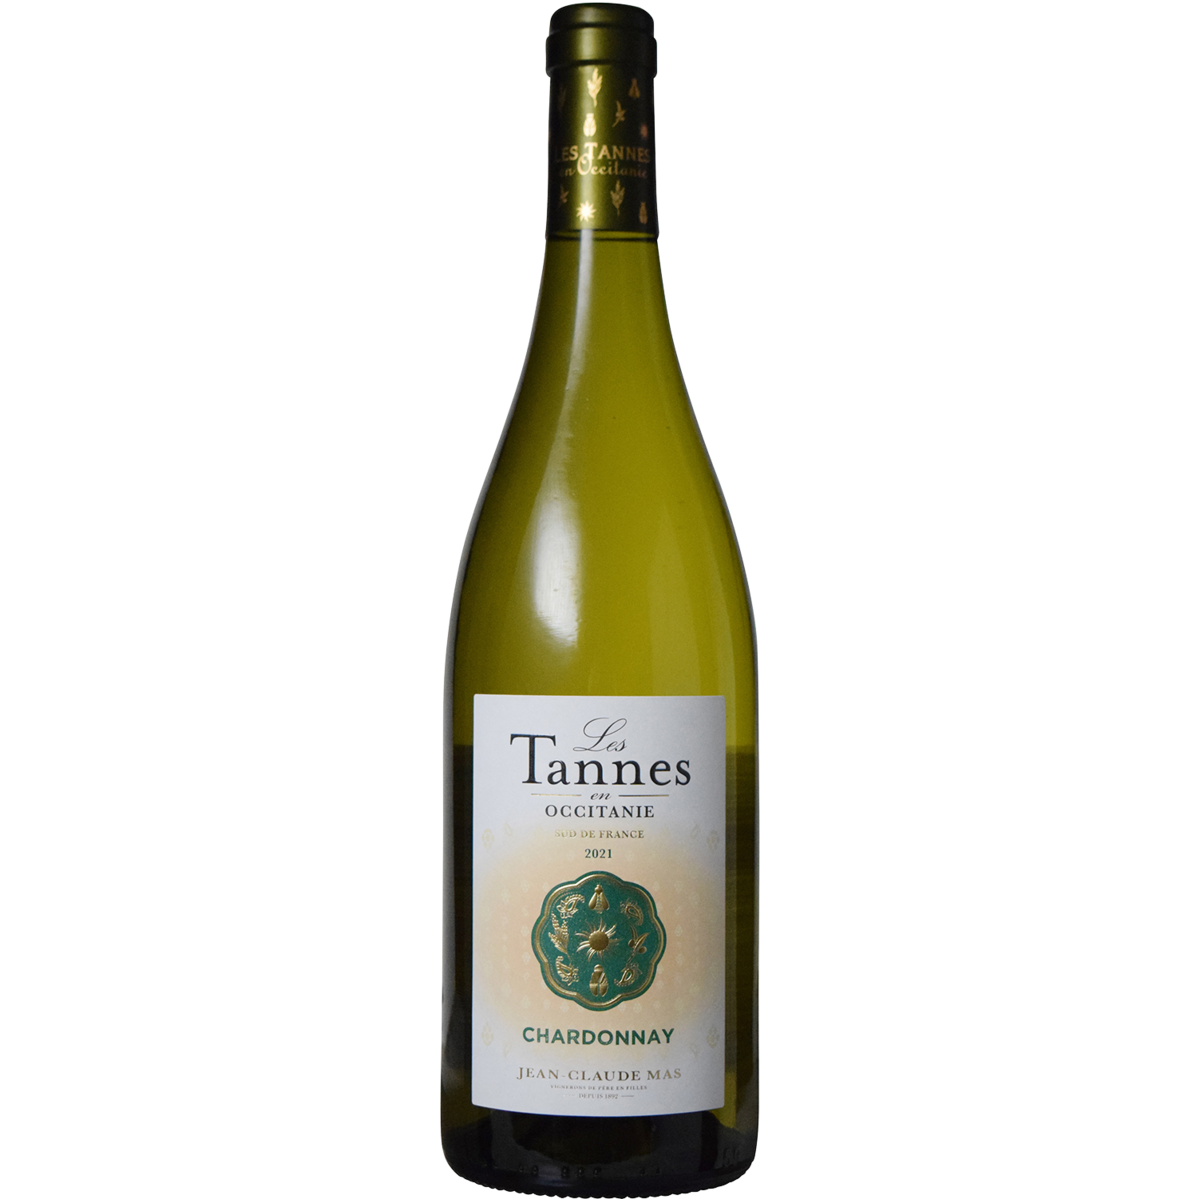 Les Tannes en Occitanie Chardonnay